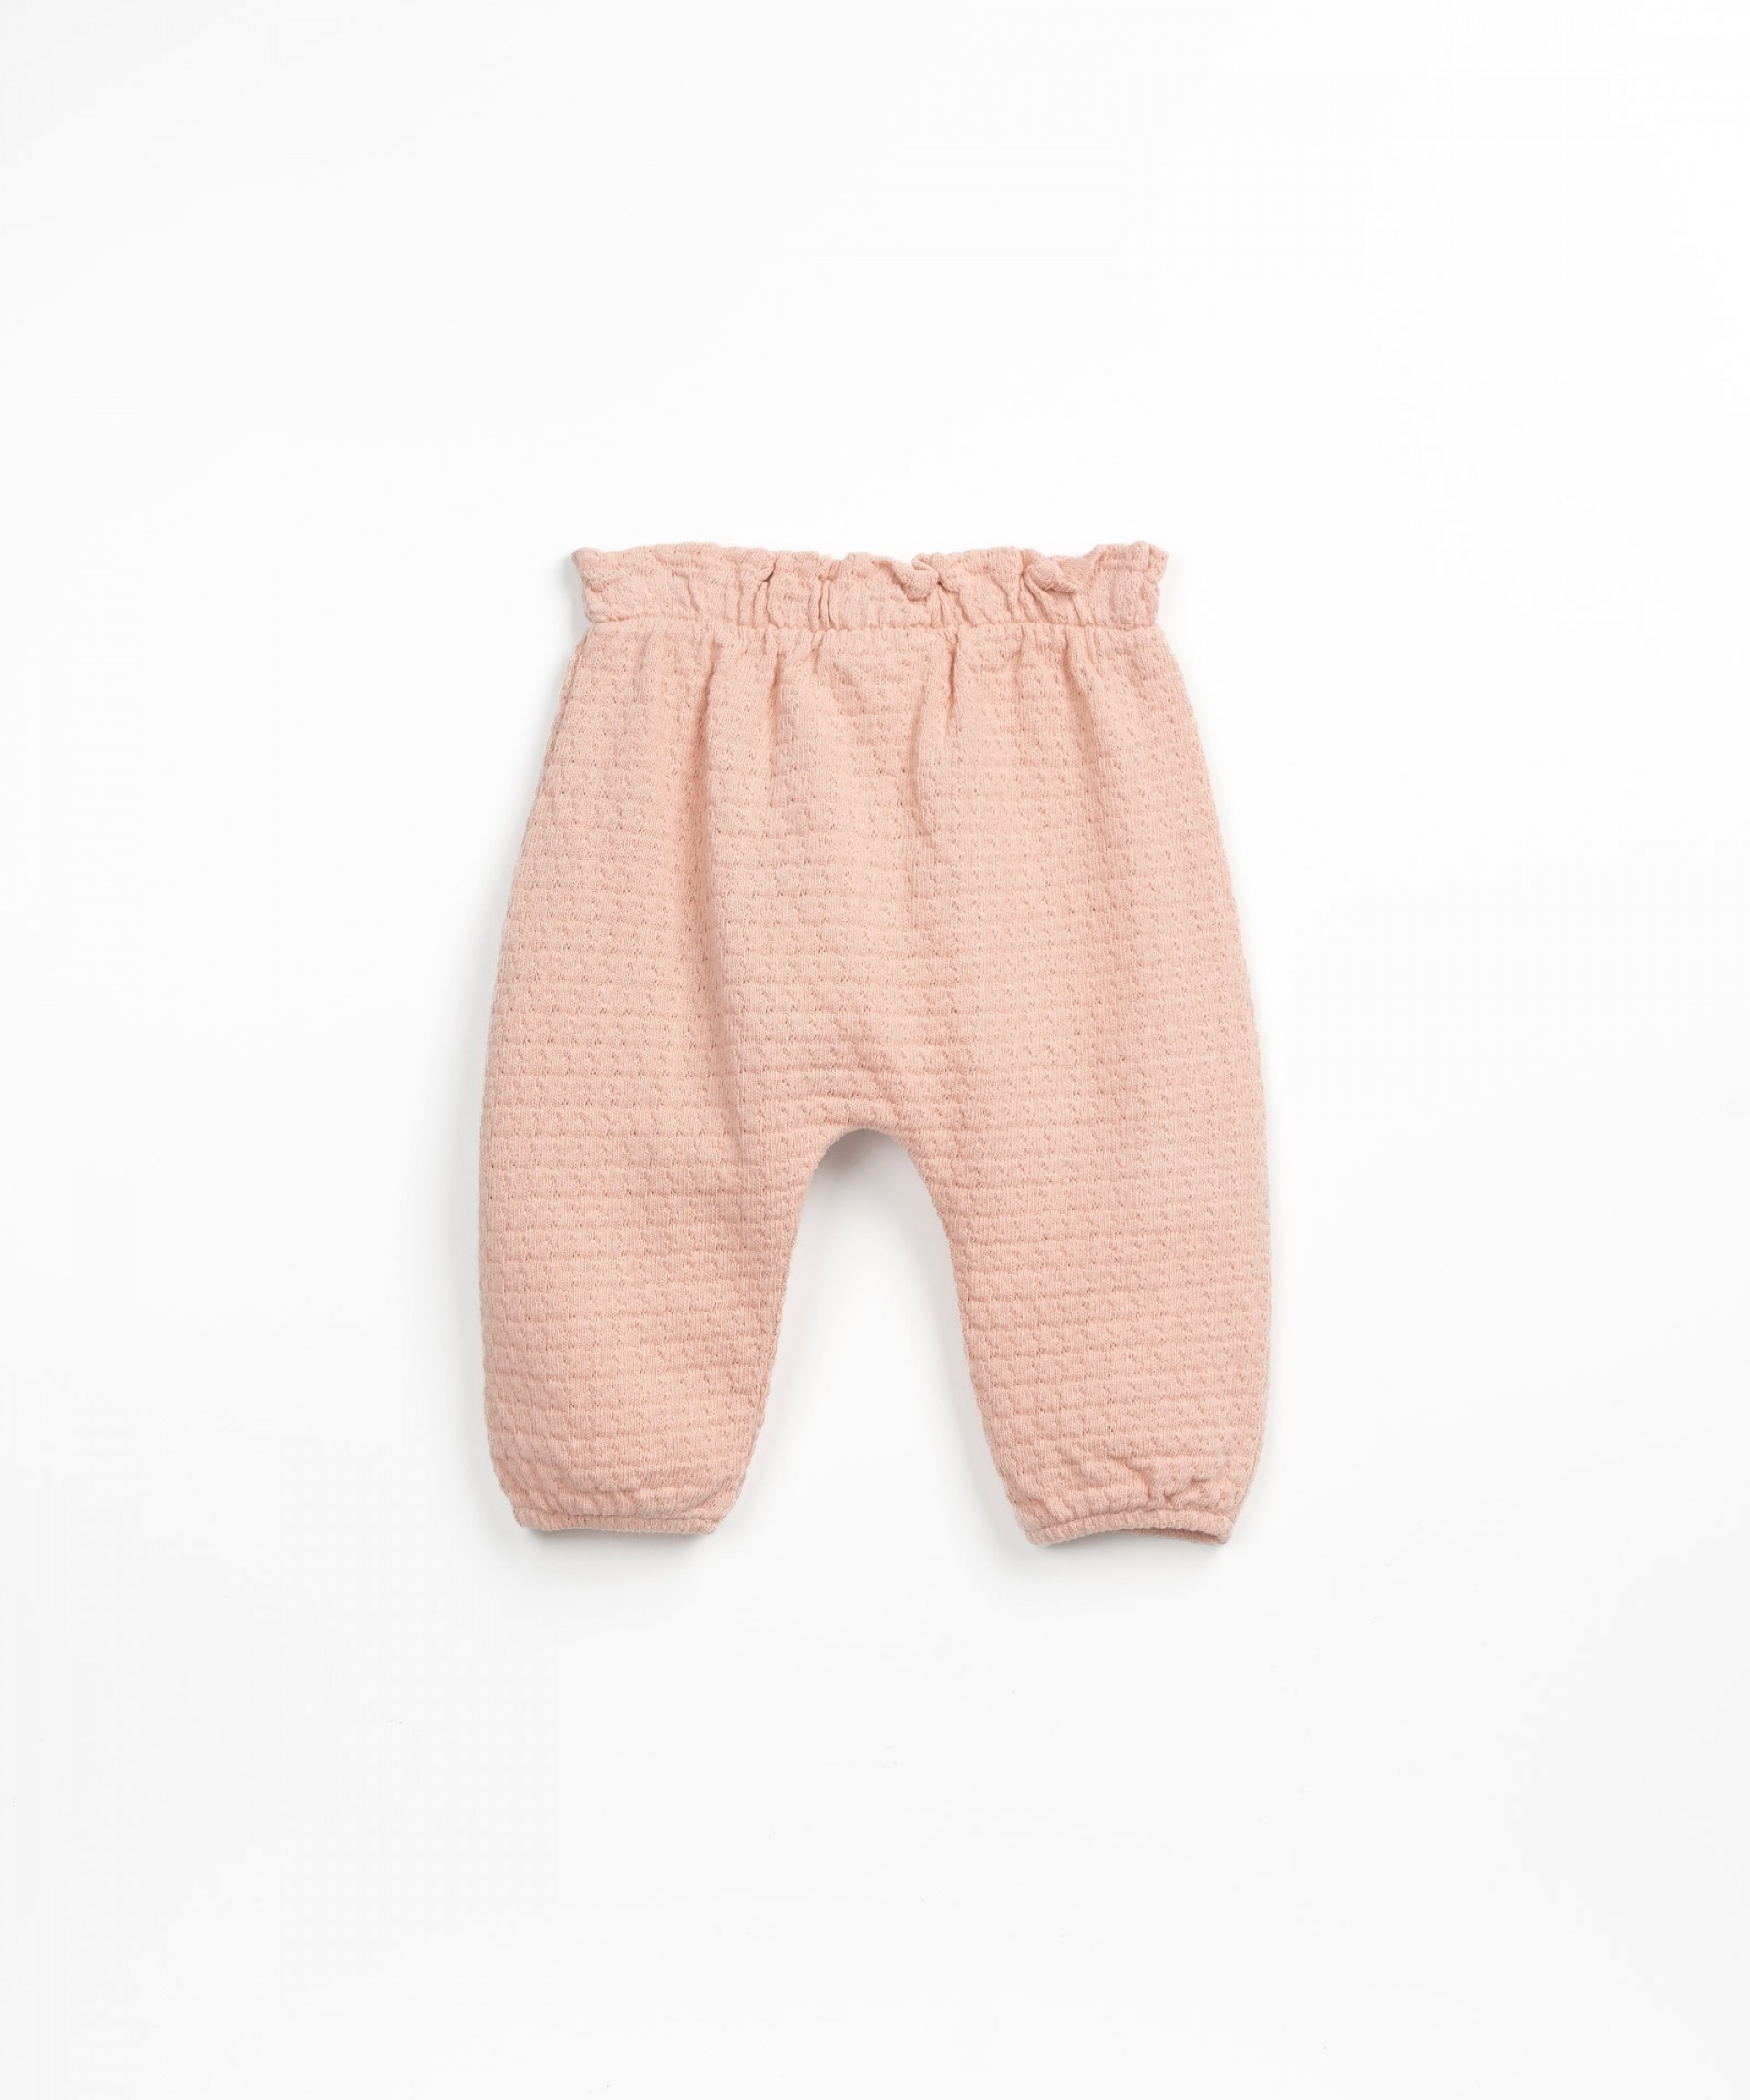 Pantaloni in cotone biologico | Textile Art